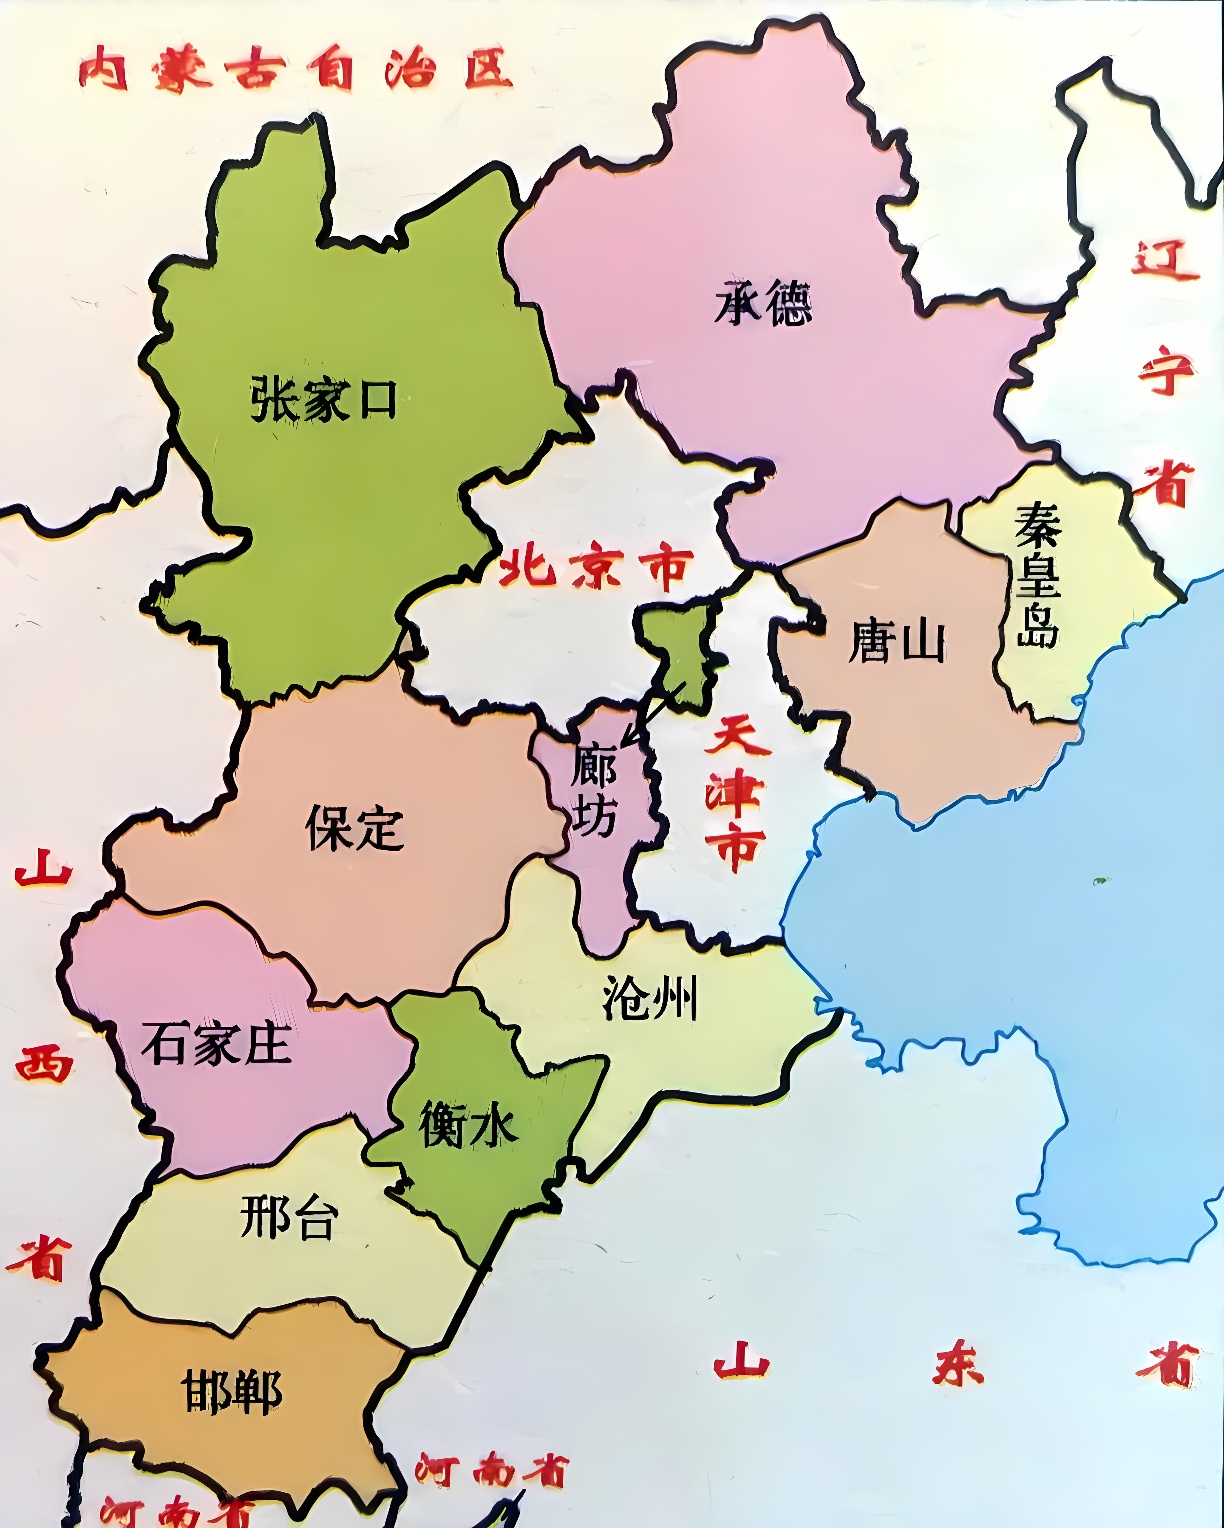 这是一张中国地图，展示了不同省份的位置和边界，各省以不同颜色区分，上面有省份的中文名称。